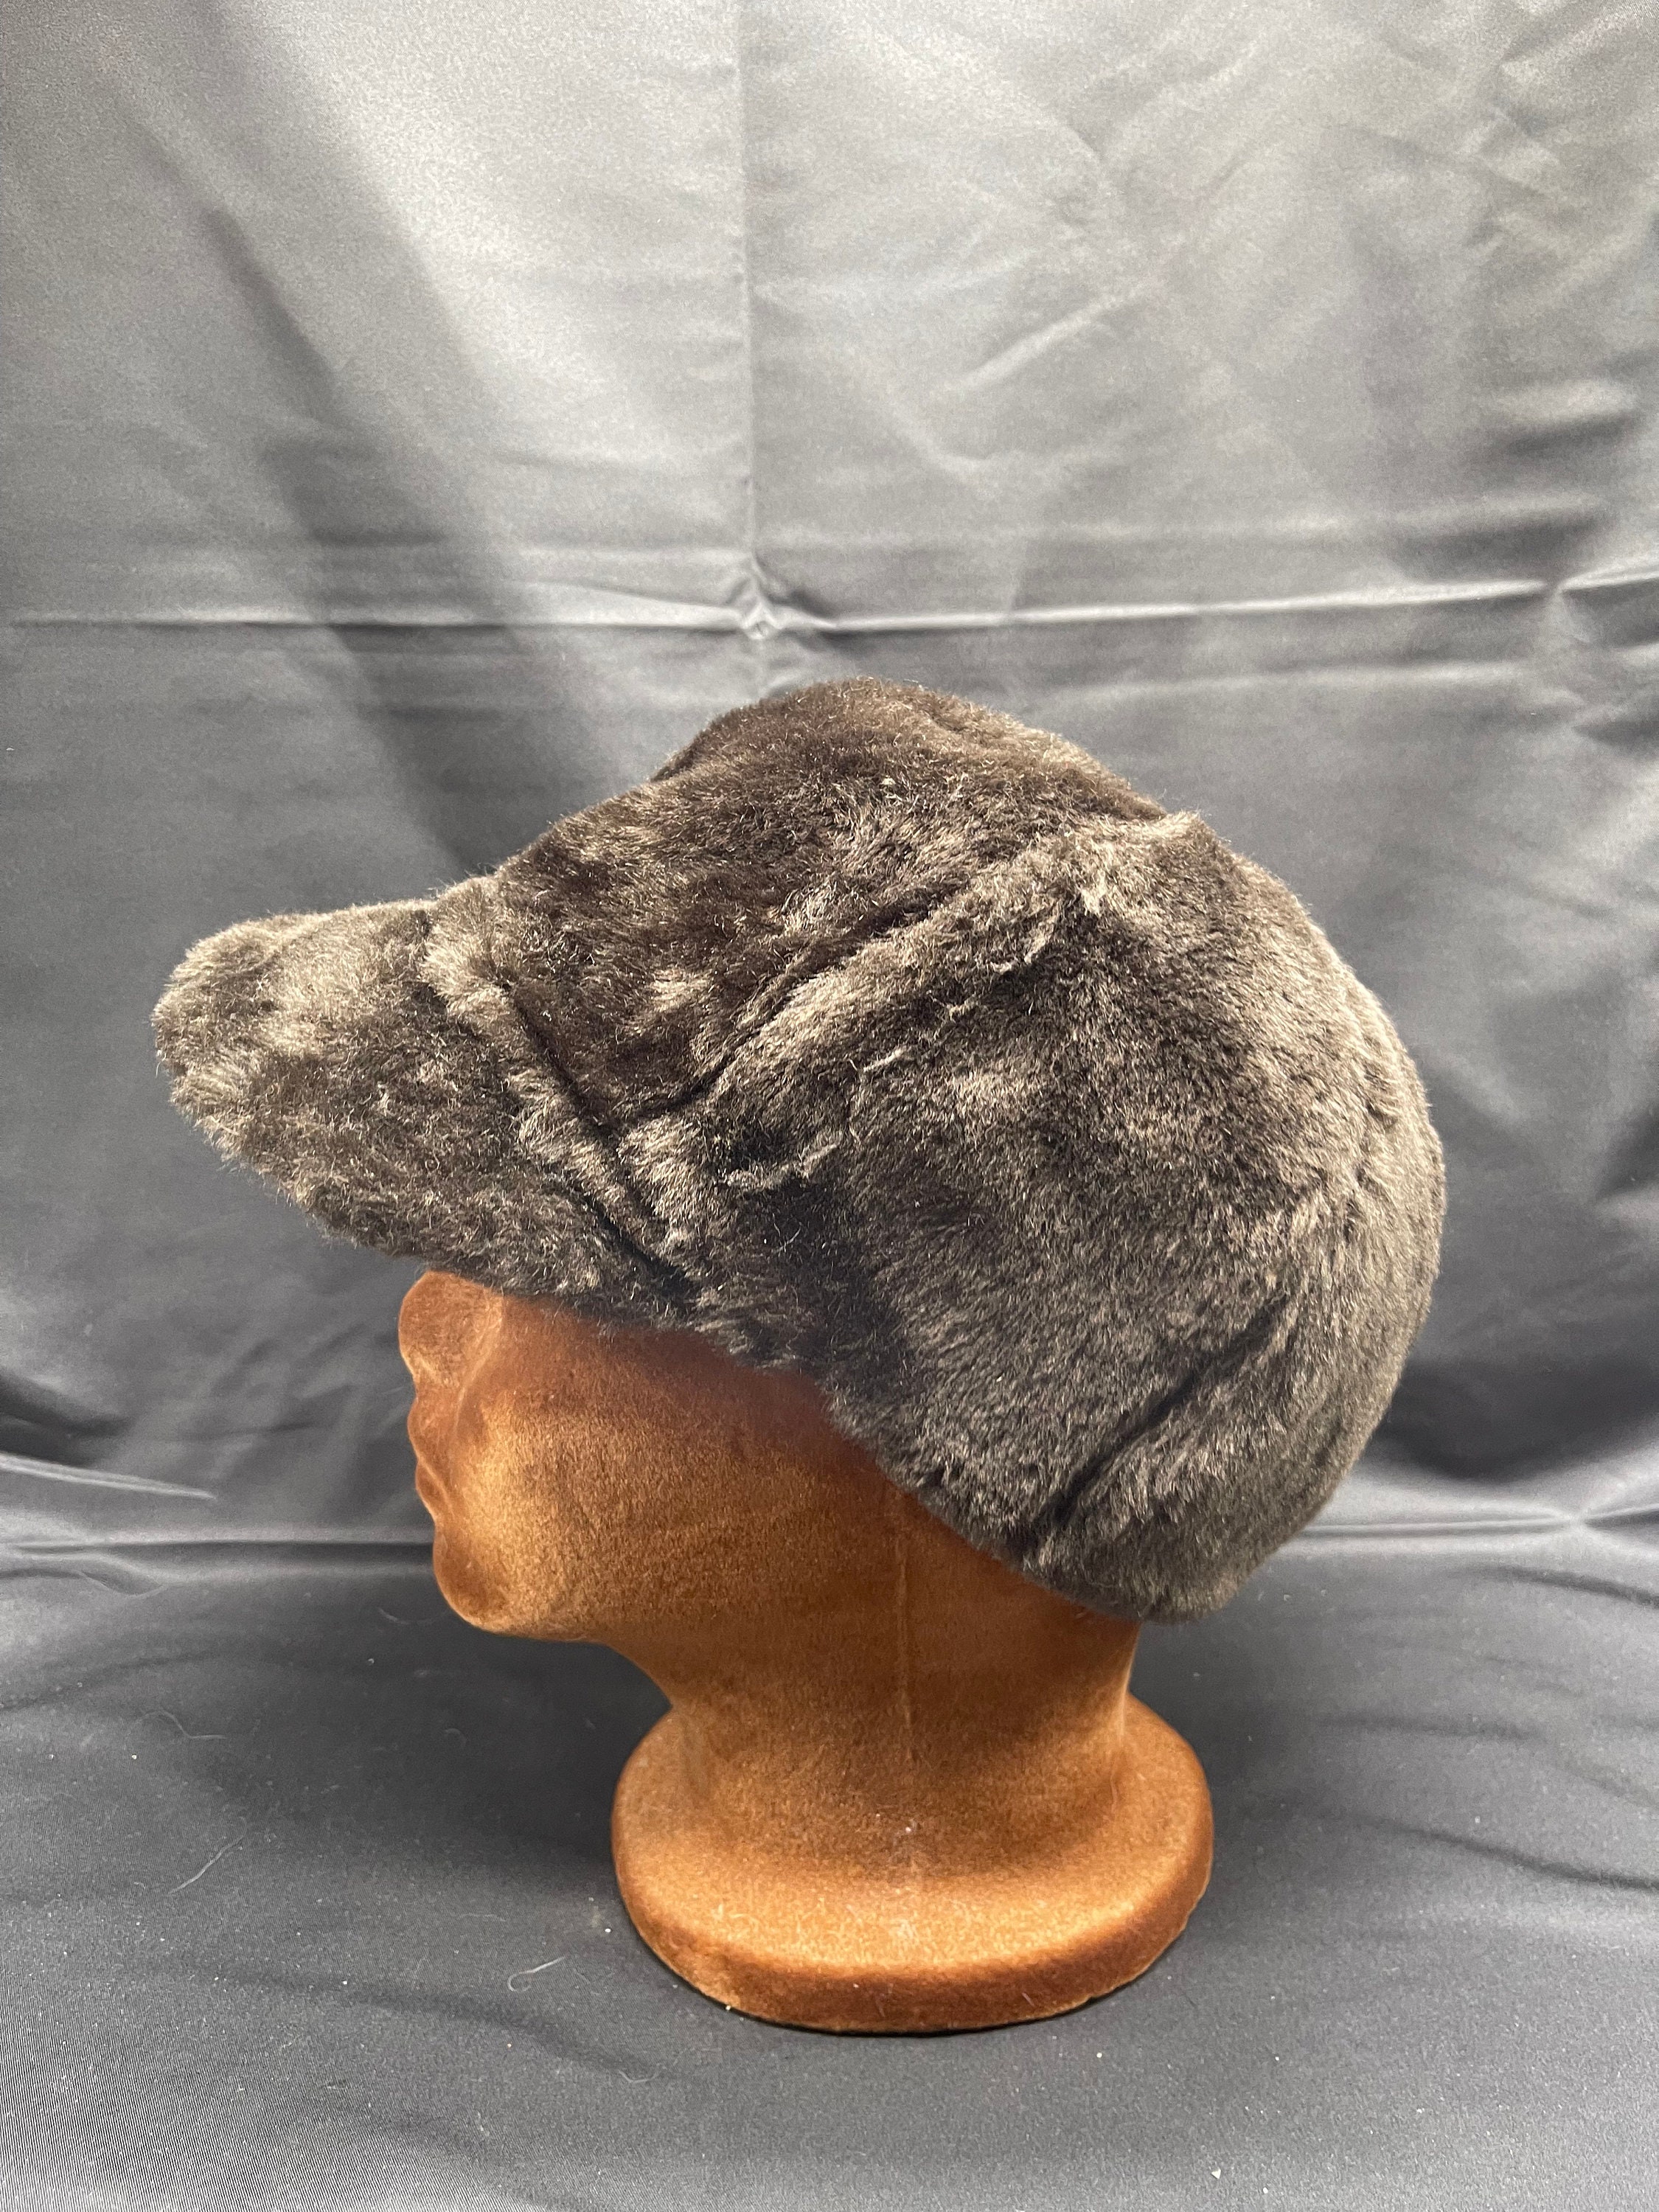 Kids' L.L.Bean Corduroy Trapper Hat